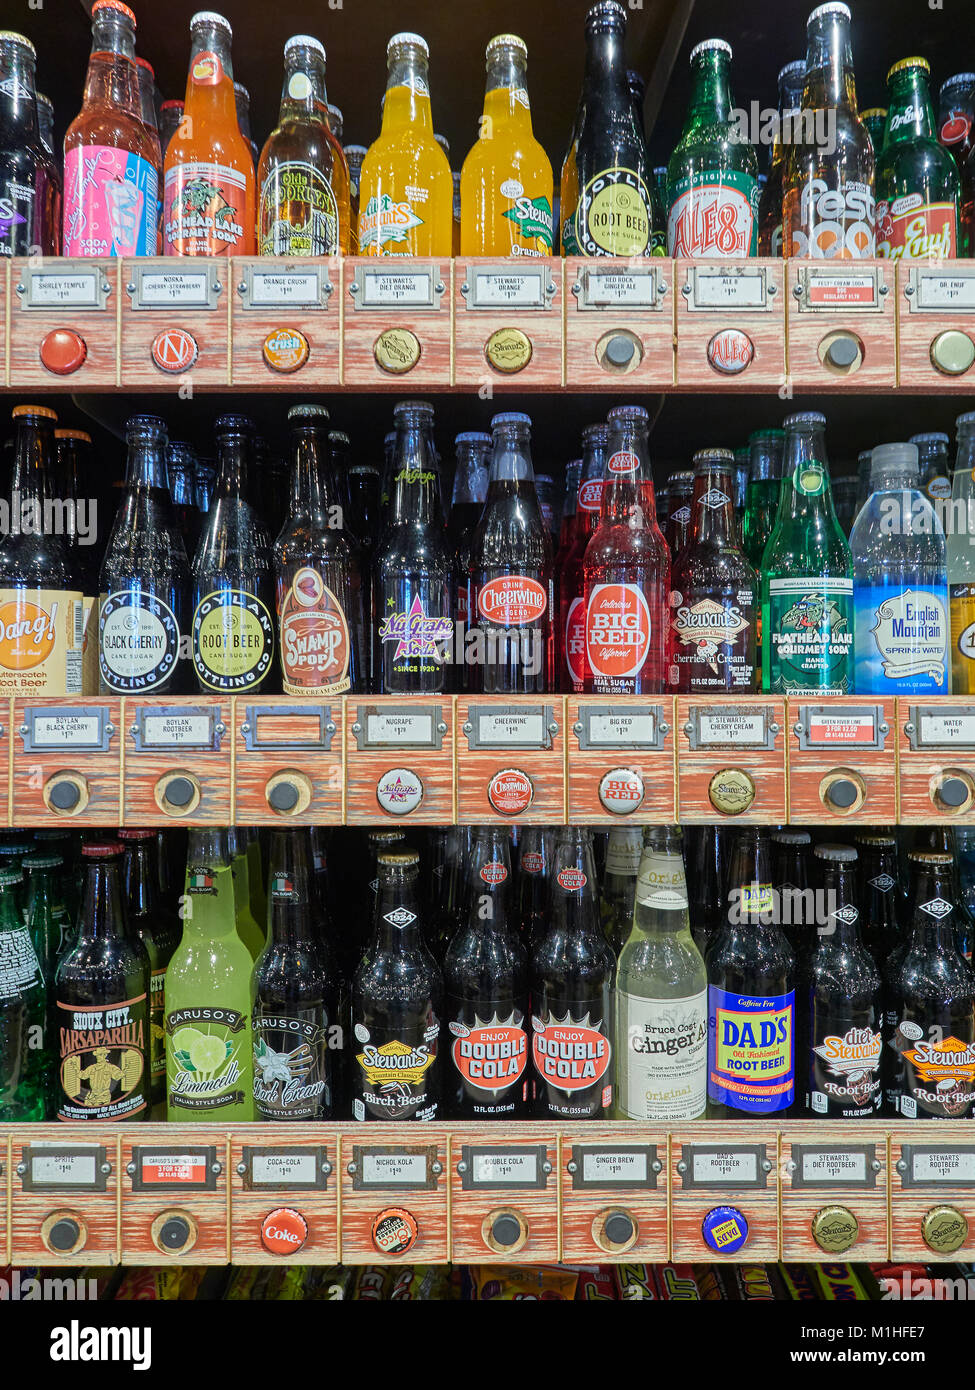 L'affichage publicitaire unique et colorée de différentes bouteilles de boisson soda dans le restaurant Cracker Barrel à Montgomery, Alabama, United States. Banque D'Images